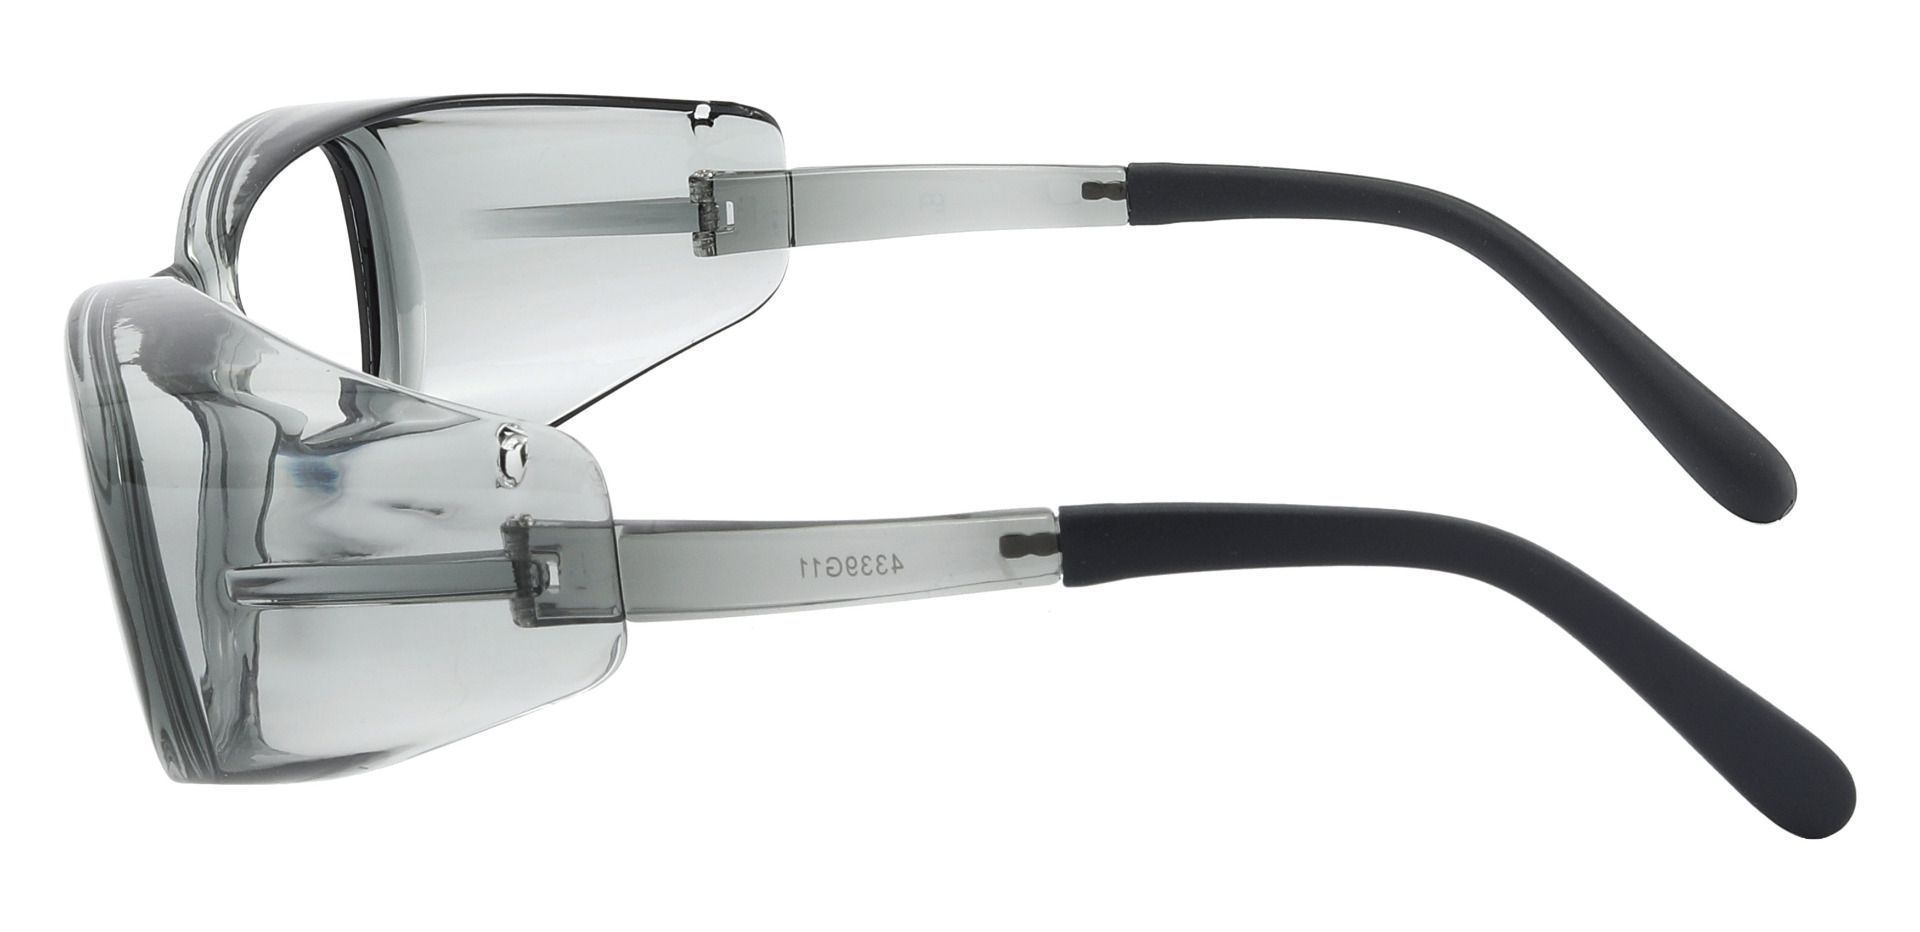 Rosario Sports Goggles Prescription Glasses - Gray